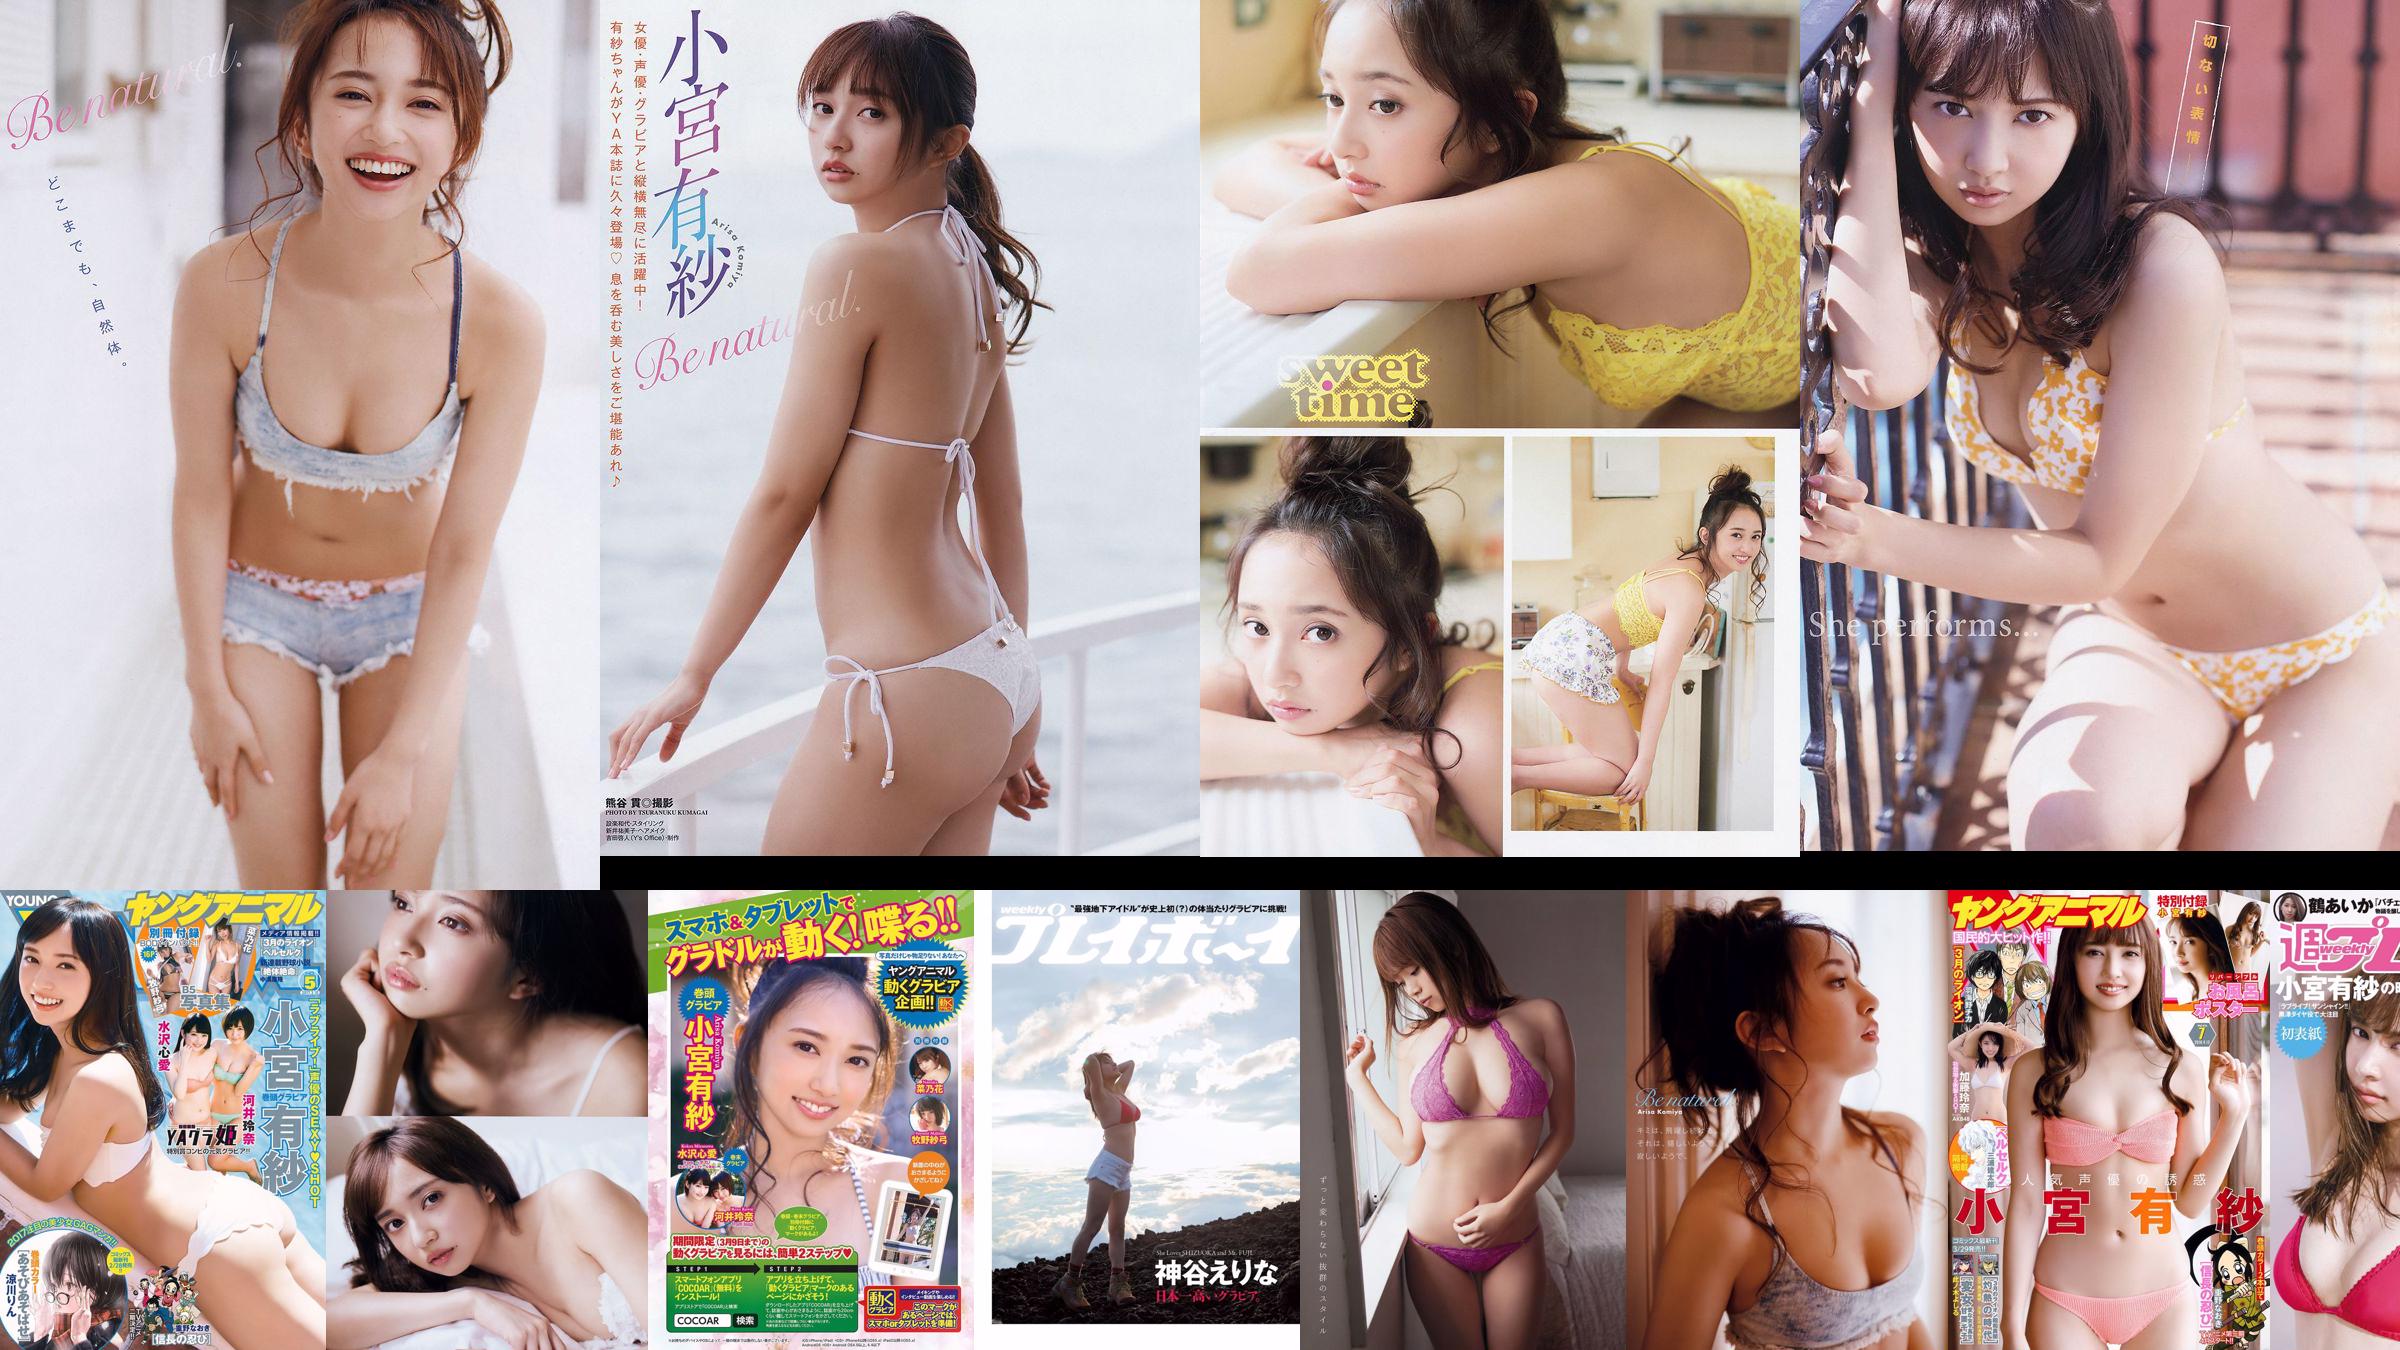 Arisa Komiya Aika Tsuru Sayaka Isoyama Kasumi Arimura Rina Otomo Sei Shiraishi Erina Kamiya [Weekly Playboy] 2017 No.41 Fotografía No.adc8e3 Página 1